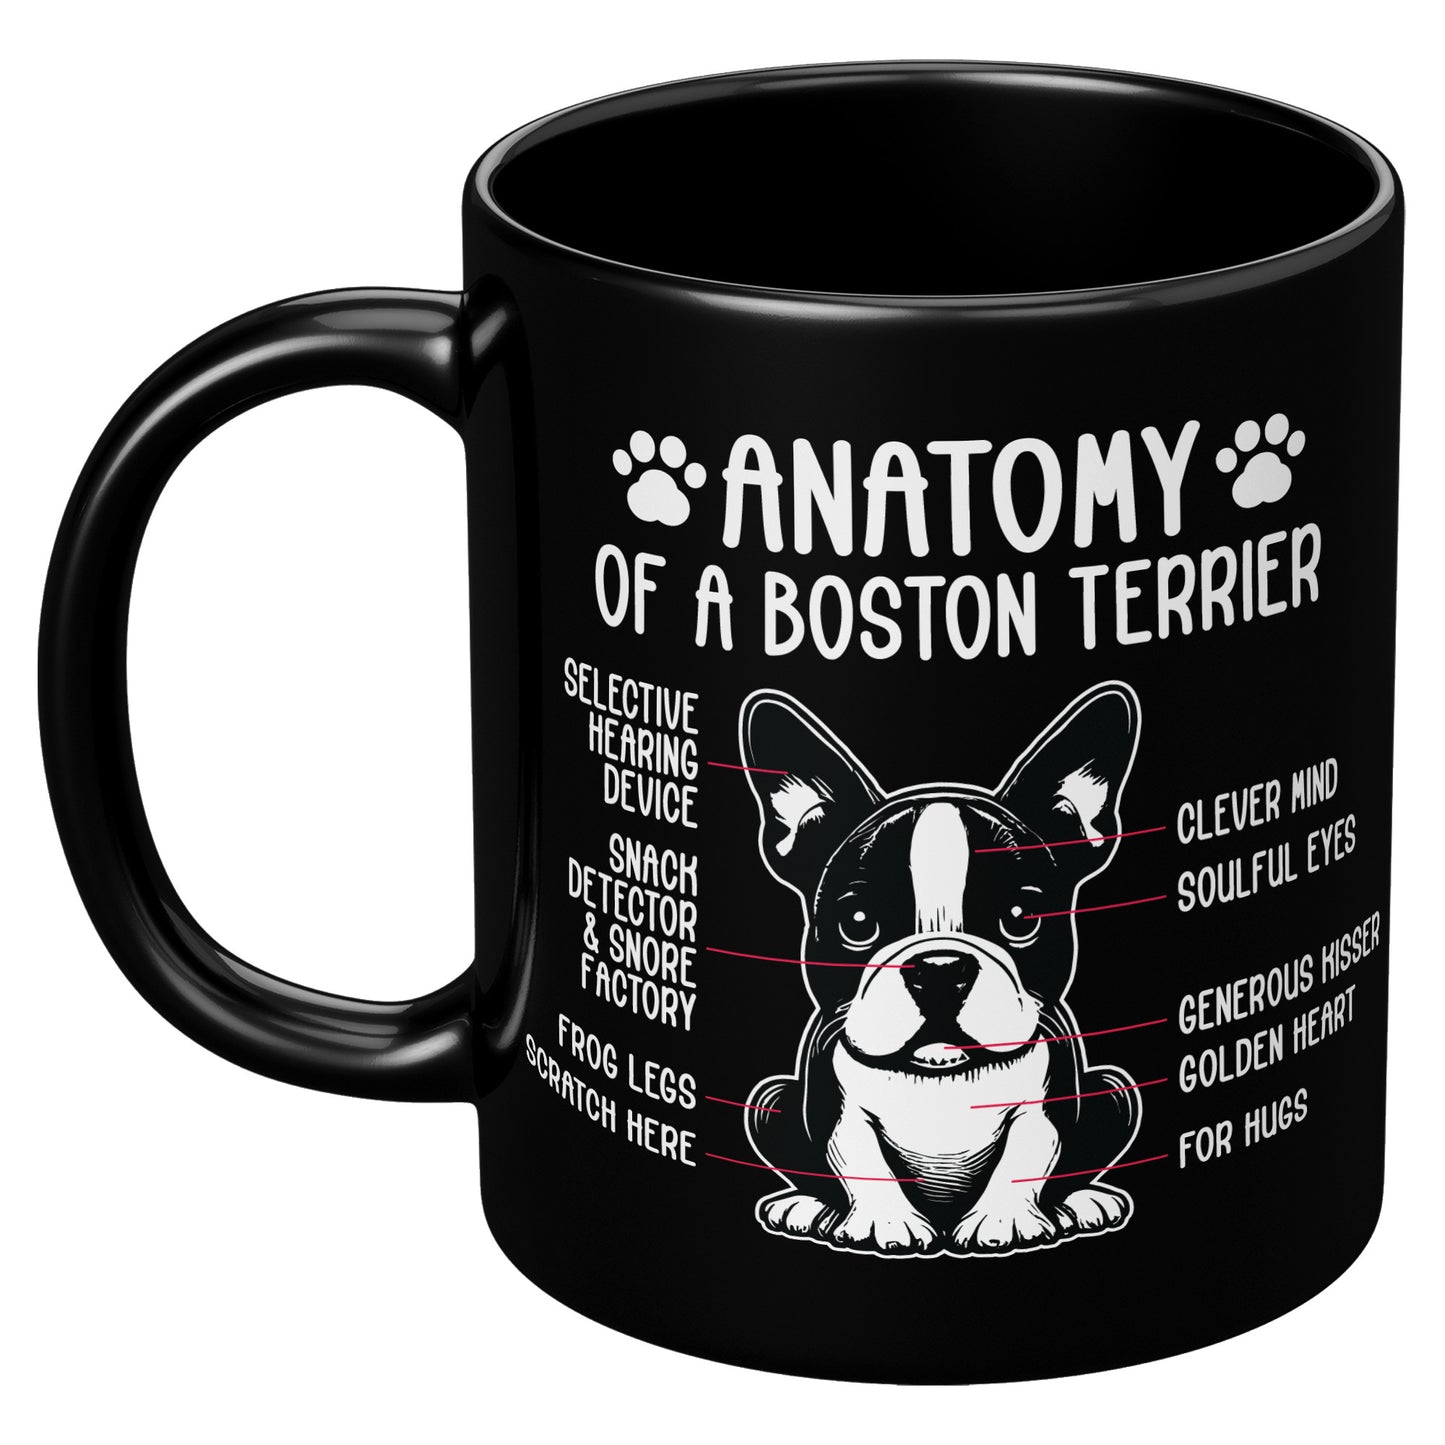 Bilbo -Mug for Boston Terrier lovers